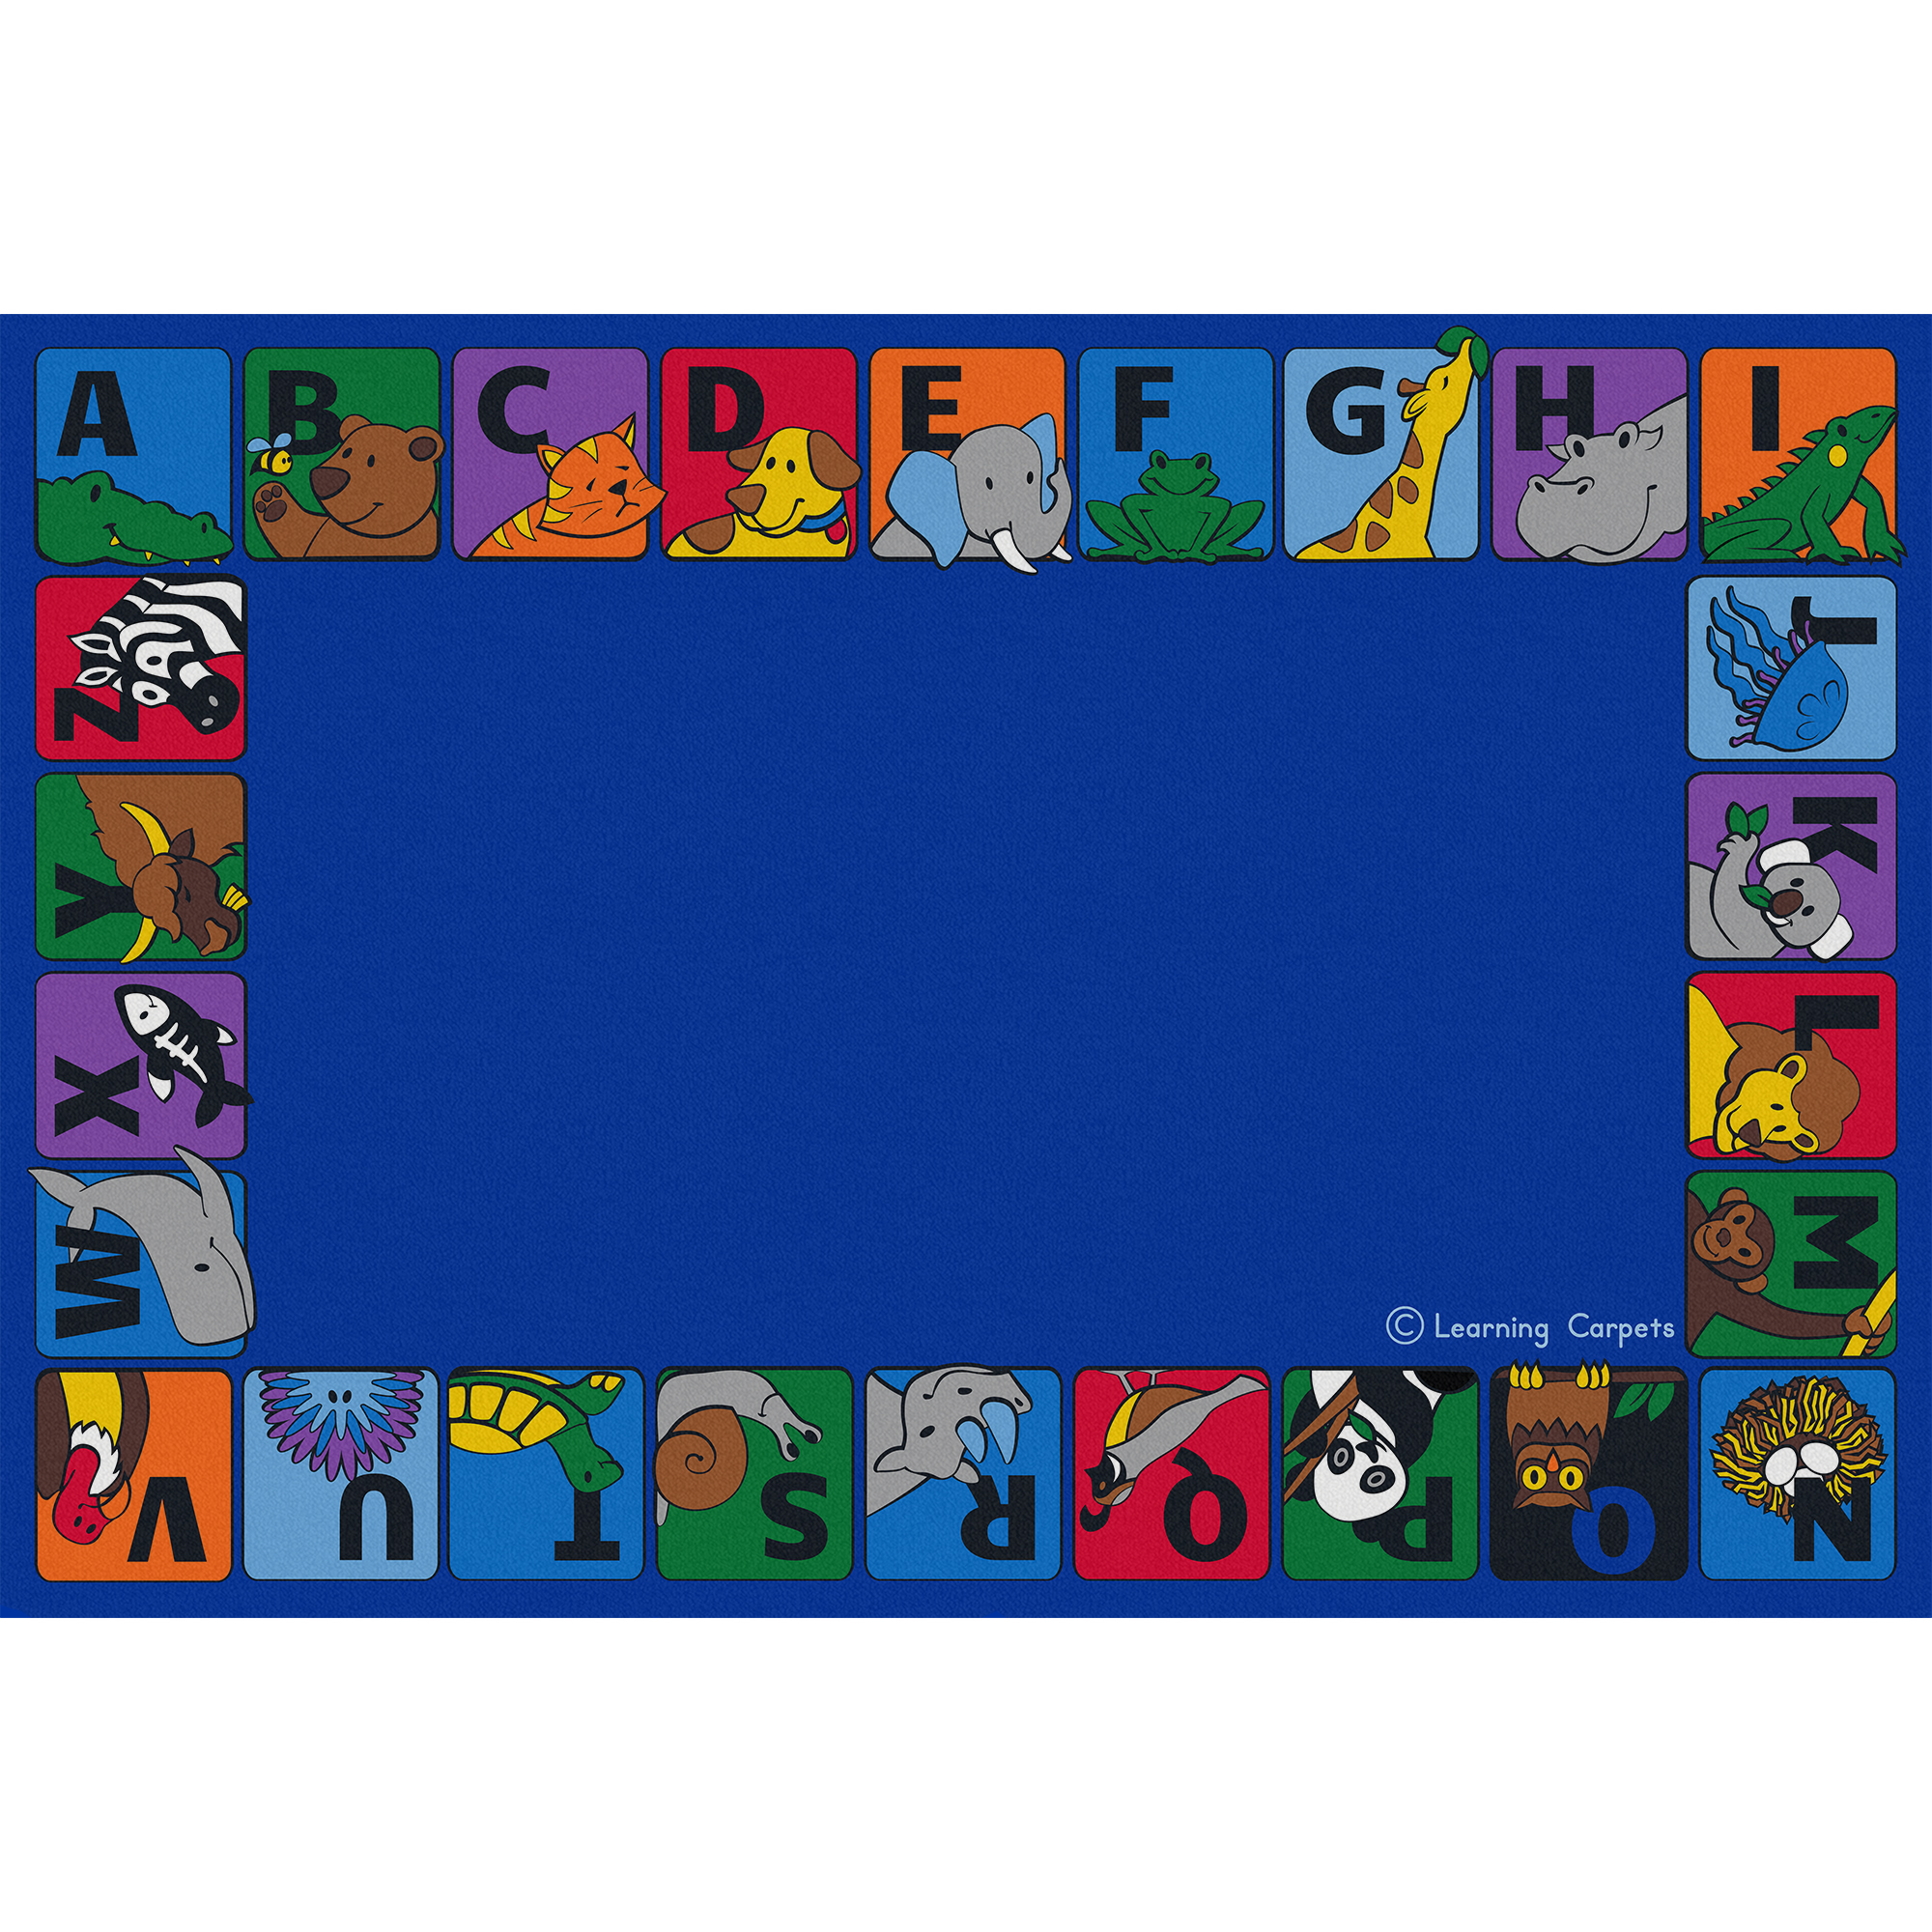 Alphabet Animals Border Rug ‐ Rectangle Large